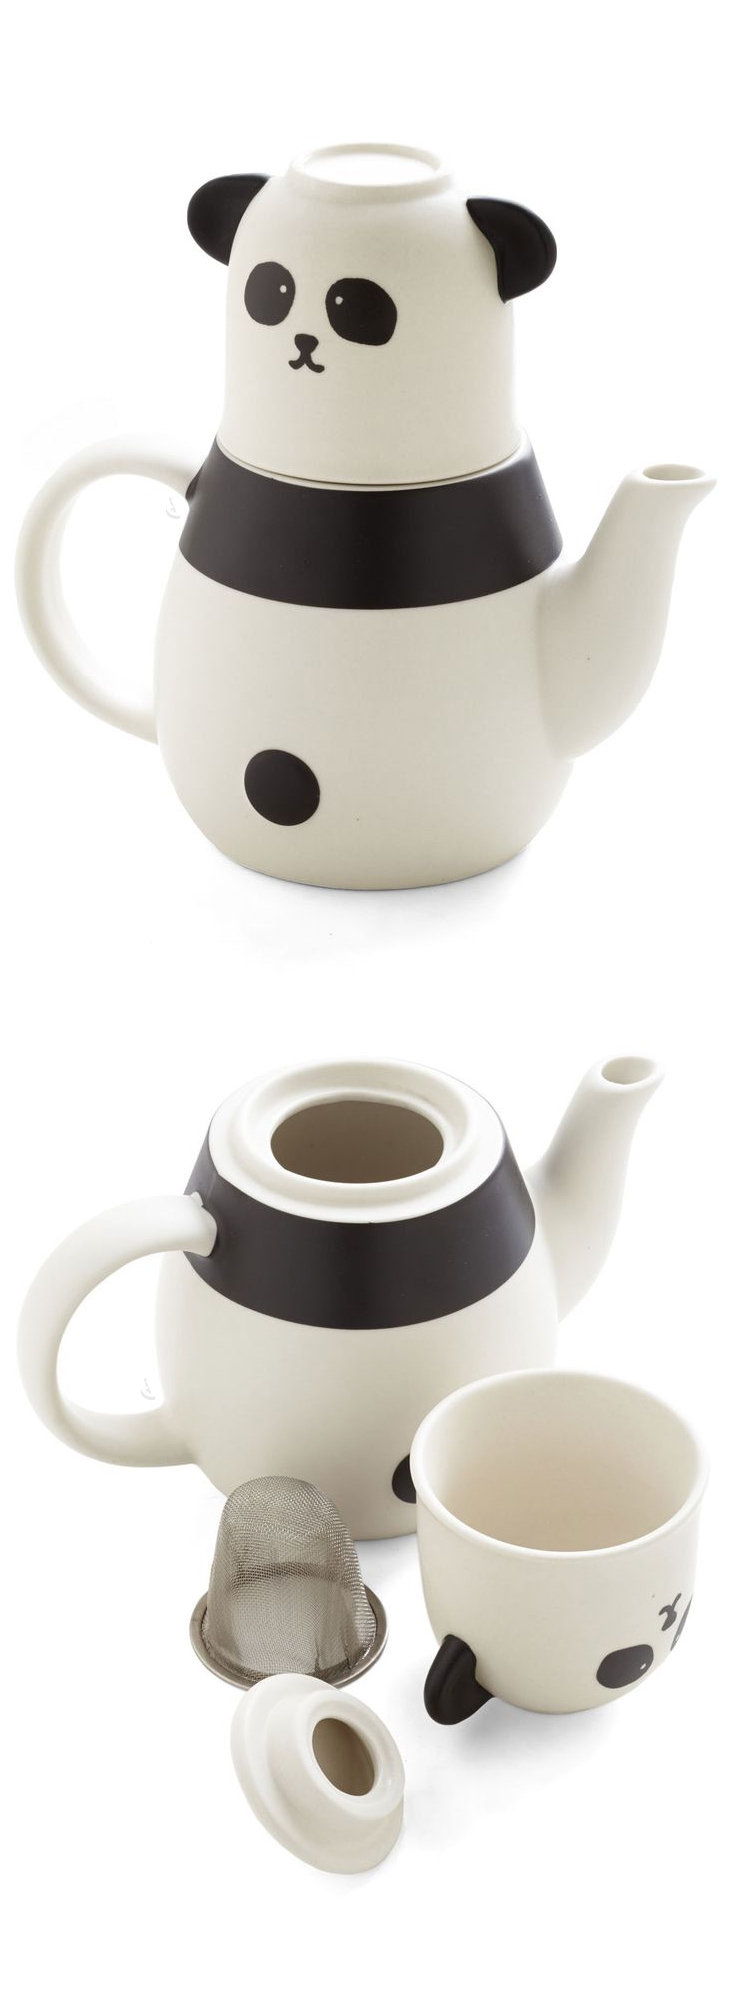 Panda teapot and tea cup set #product_design